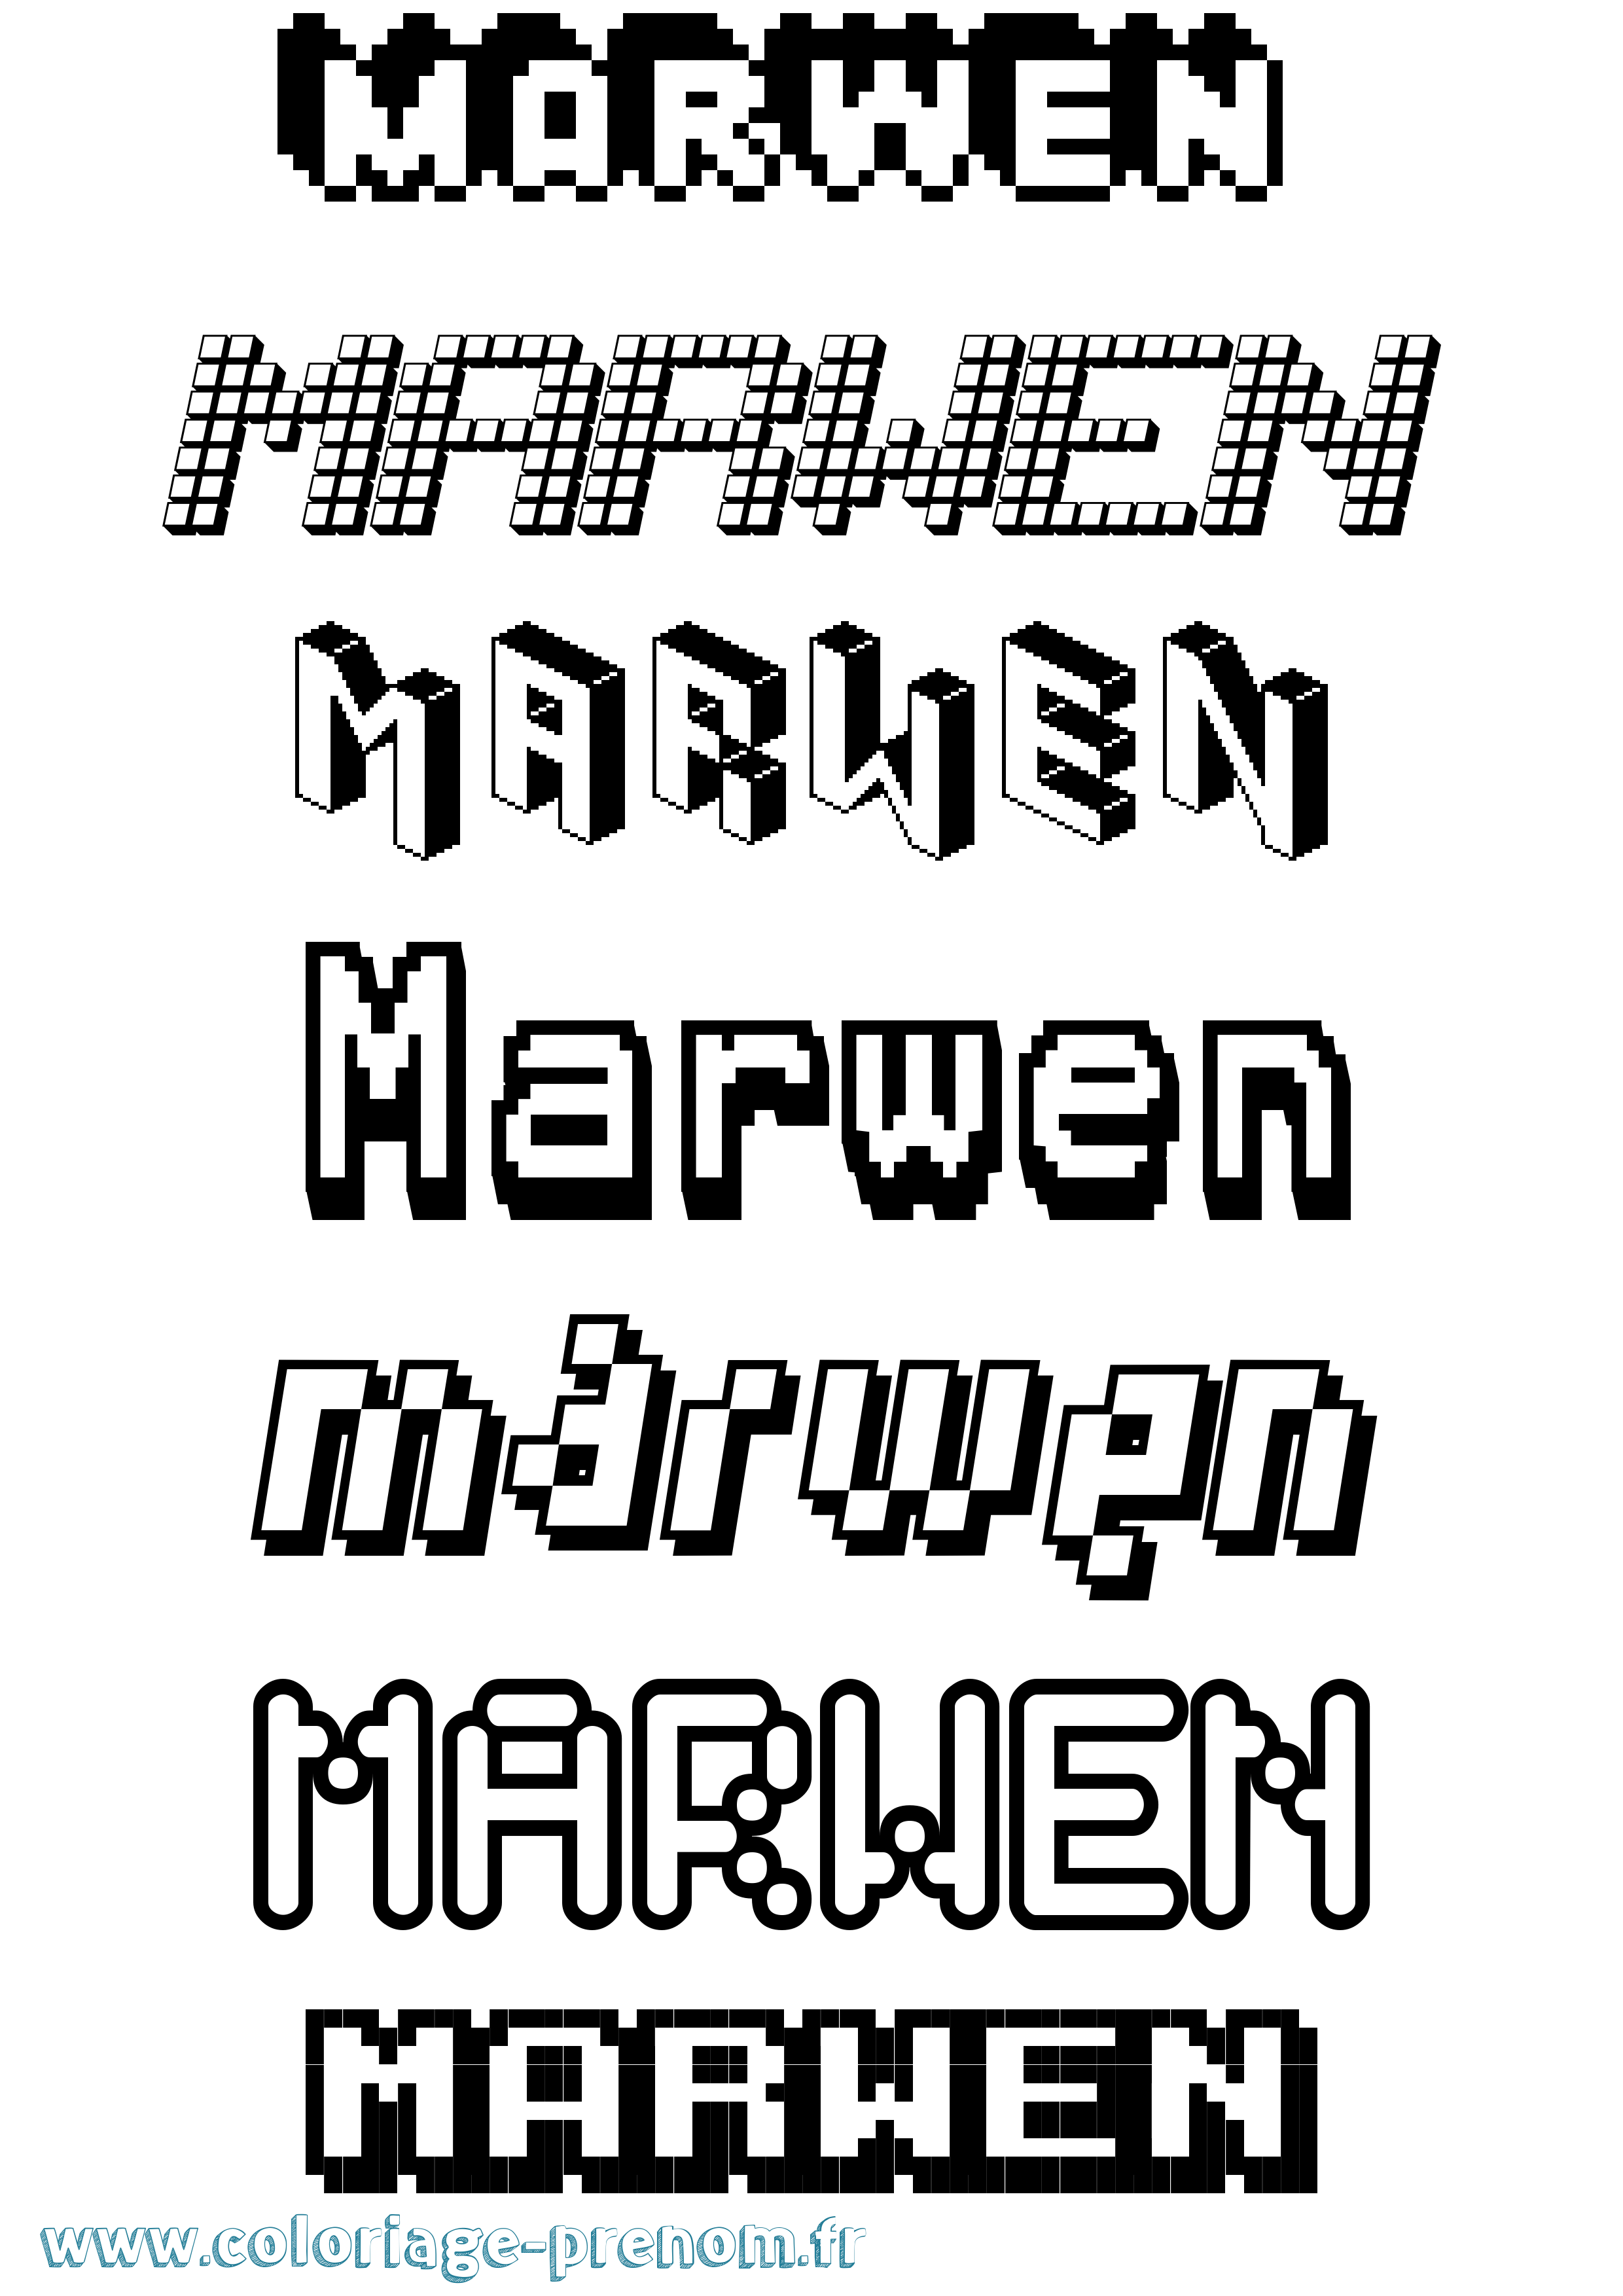 Coloriage prénom Marwen Pixel